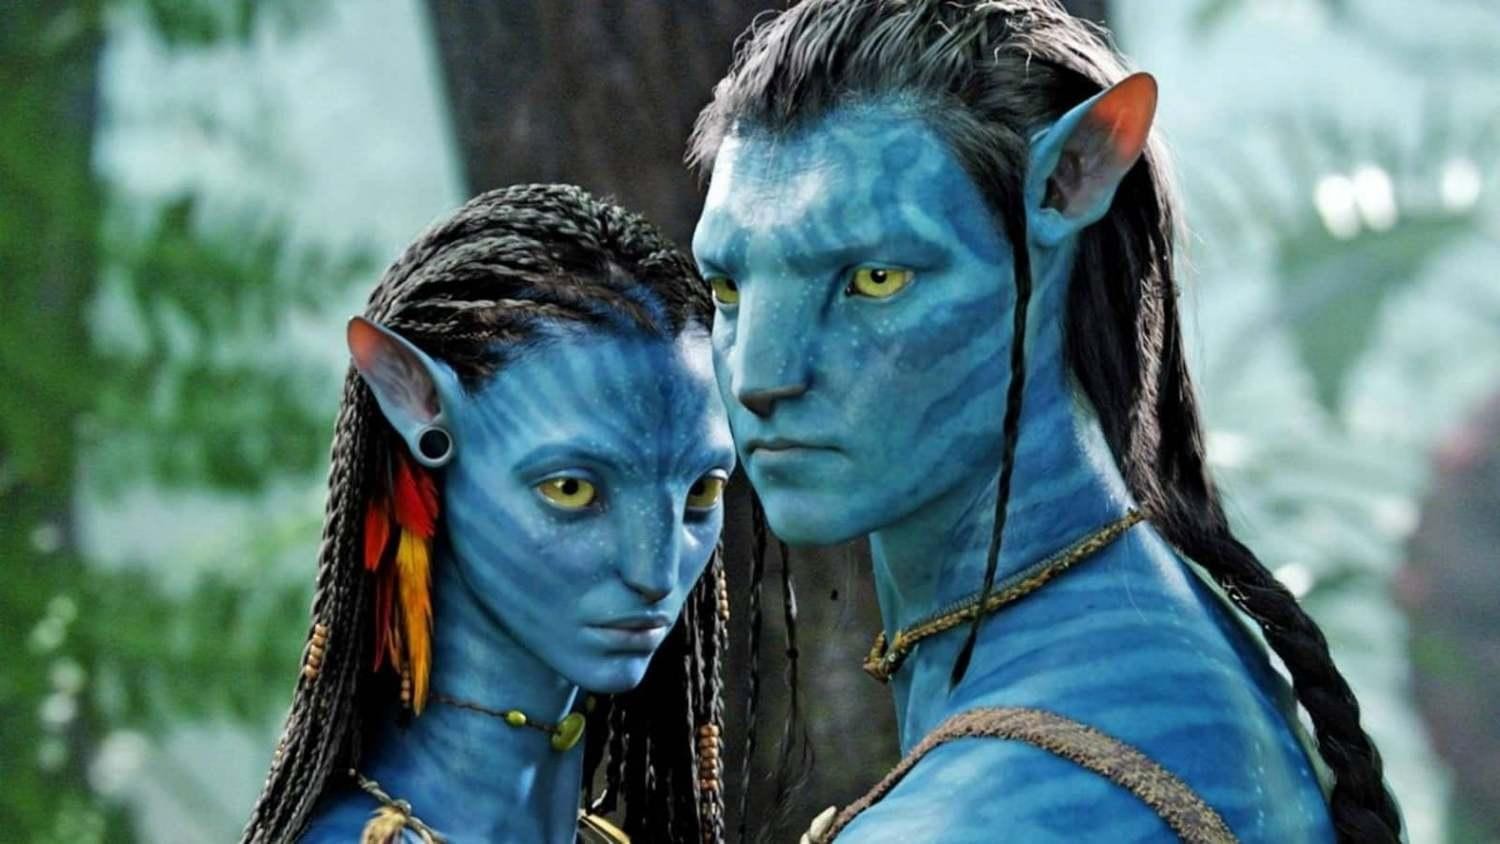 Avatar 2: Sau khi phát hành vào năm 2022, Avatar 2 được mong đợi sẽ đứng trong top 10 doanh thu điện ảnh toàn cầu năm